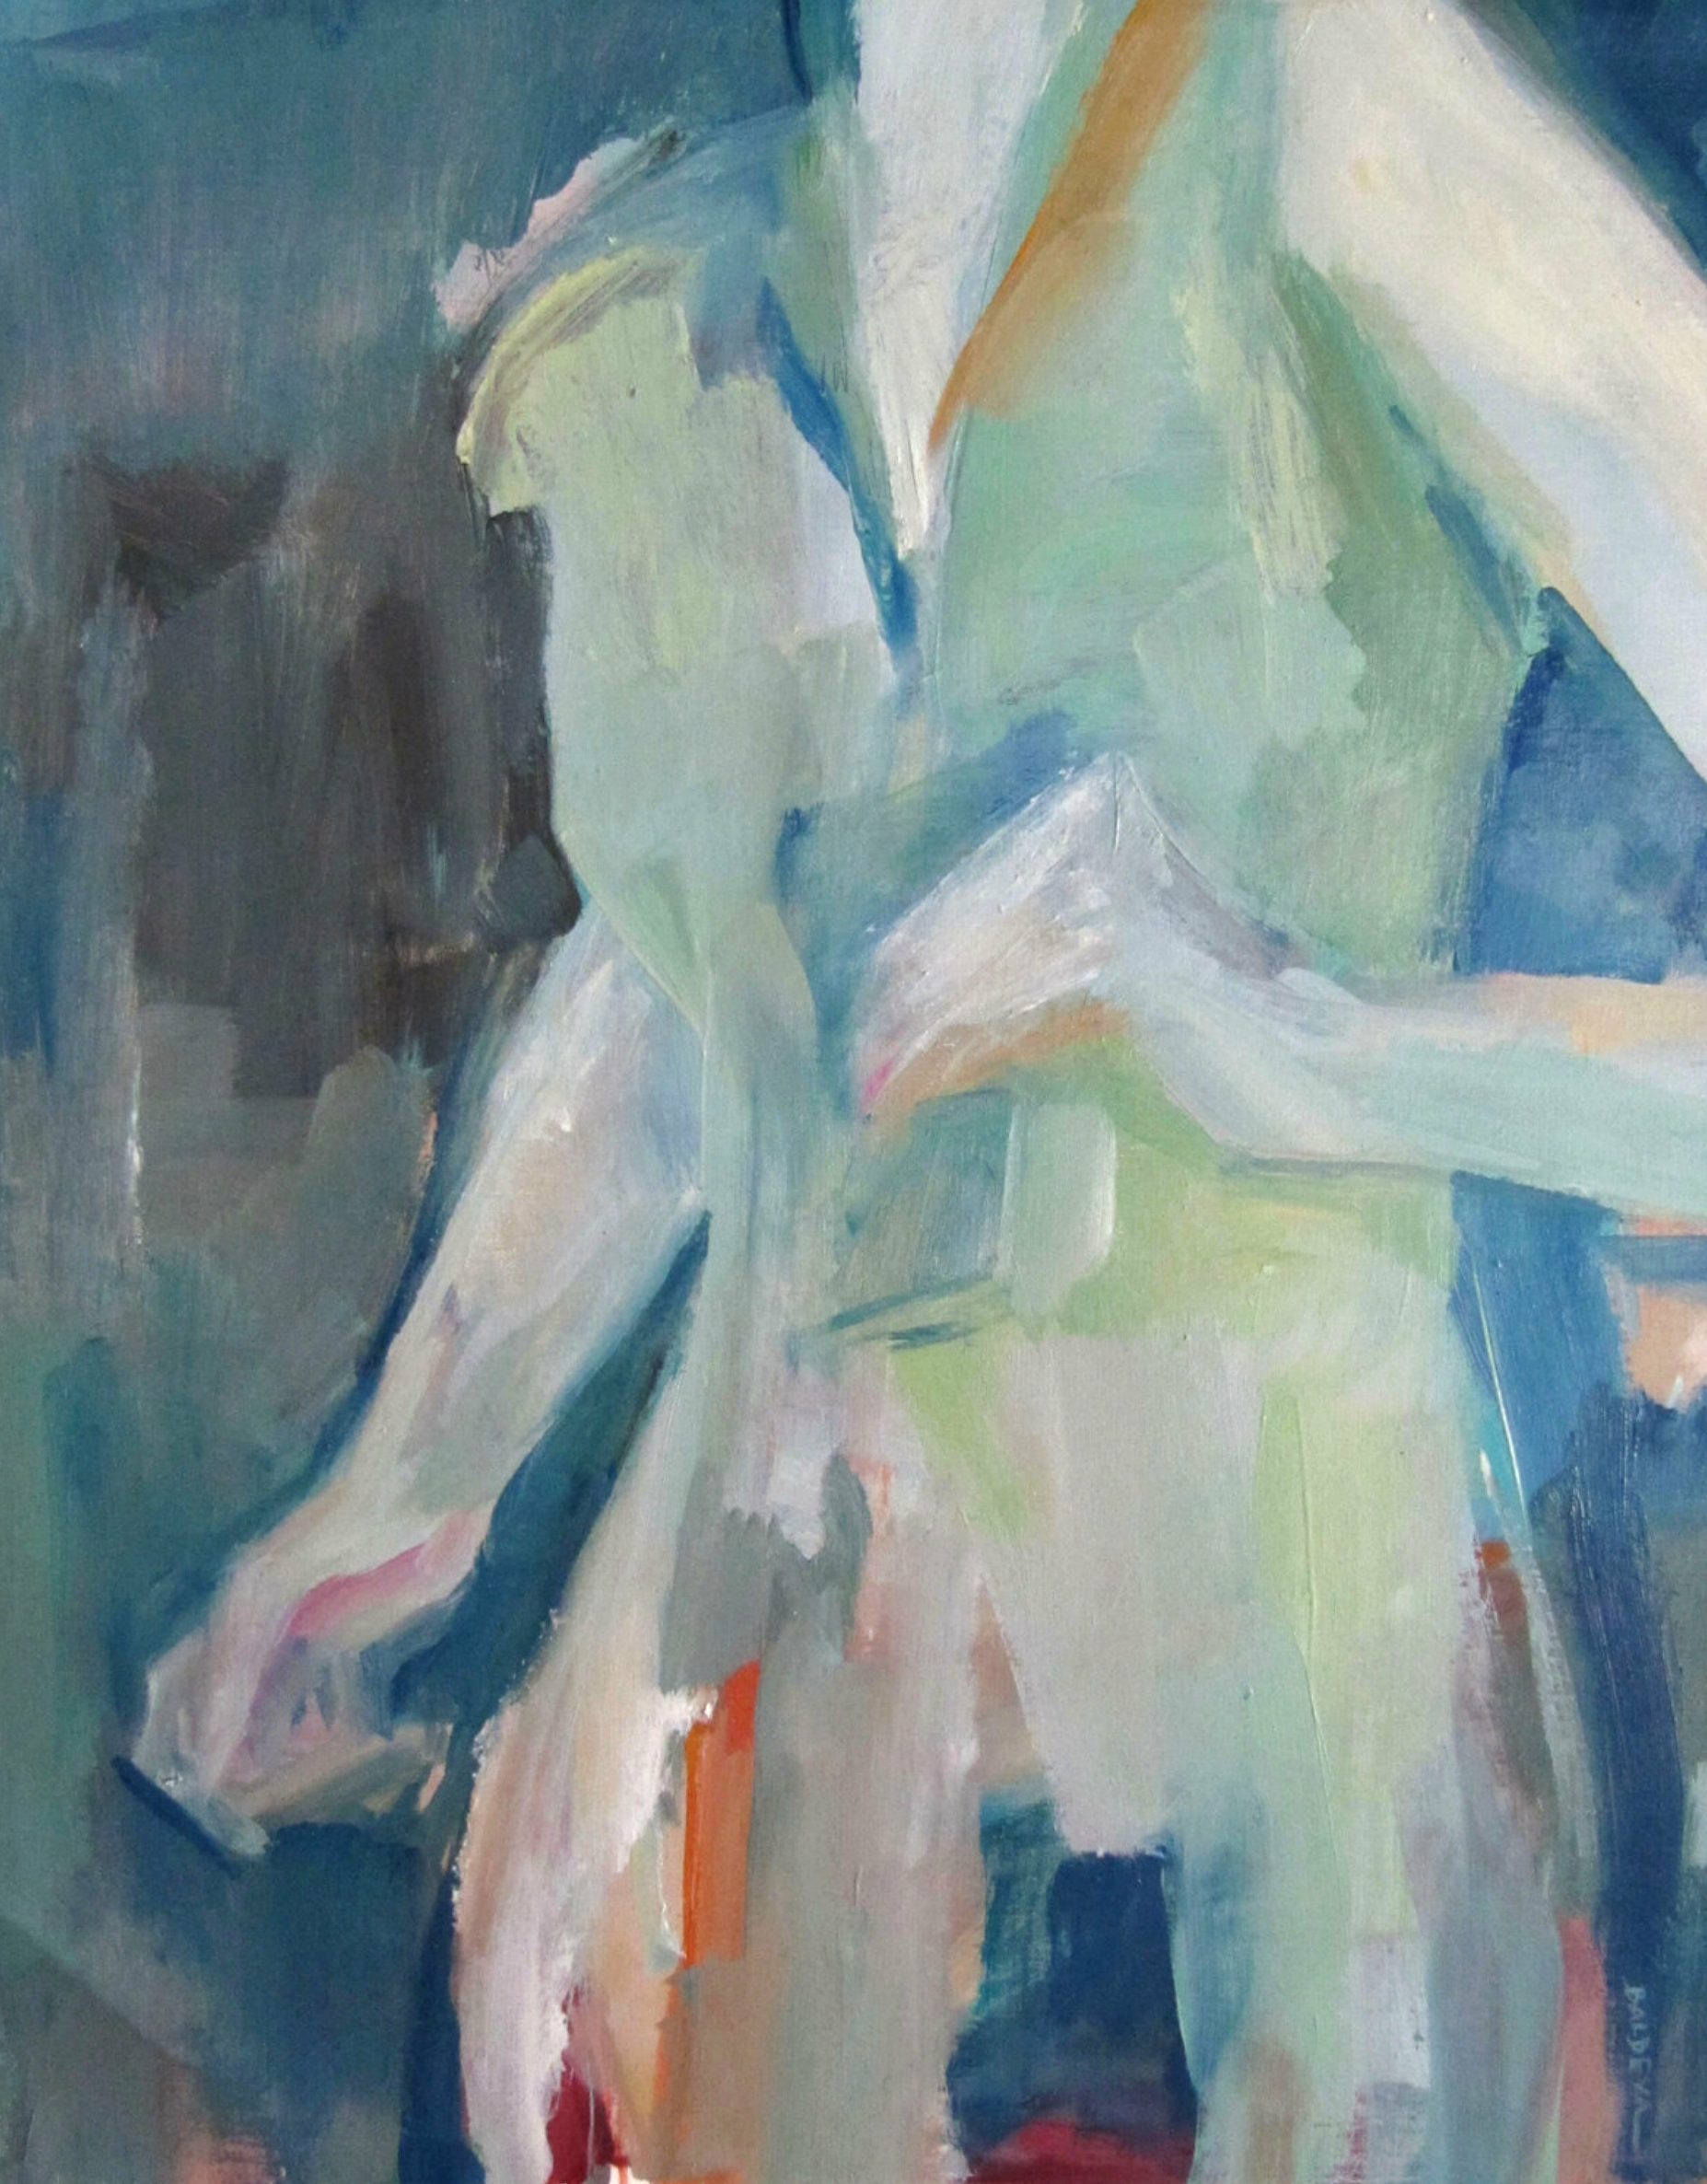 Cource", de Sylvia Baldeva, es un óleo pintado de forma semiabstracta.  Primer plano de una mujer caminando una escena de la vida.